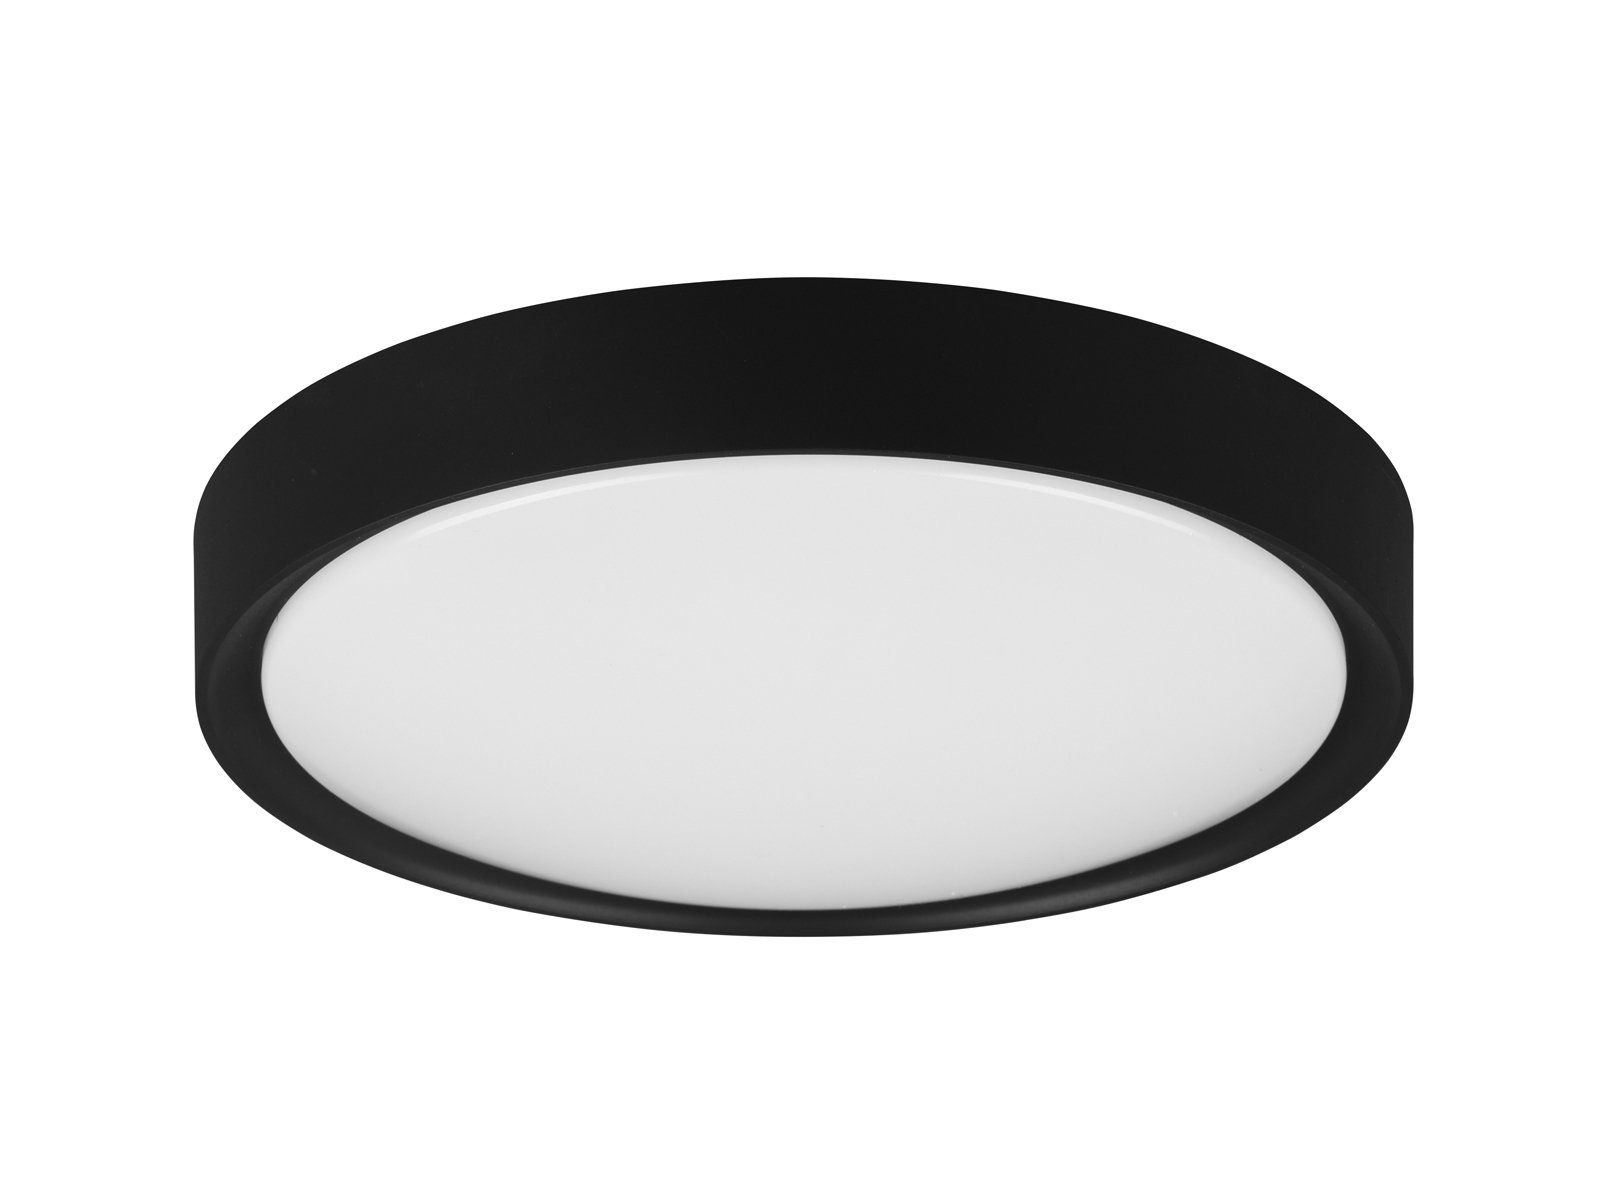 Decke LED Schwarz WC fest für matt Schwarz LED Gäste 2erSet Deckenleuchte, integriert, meineWunschleuchte IP44 Badezimmerlampen Badlampe Warmweiß, Ø33cm